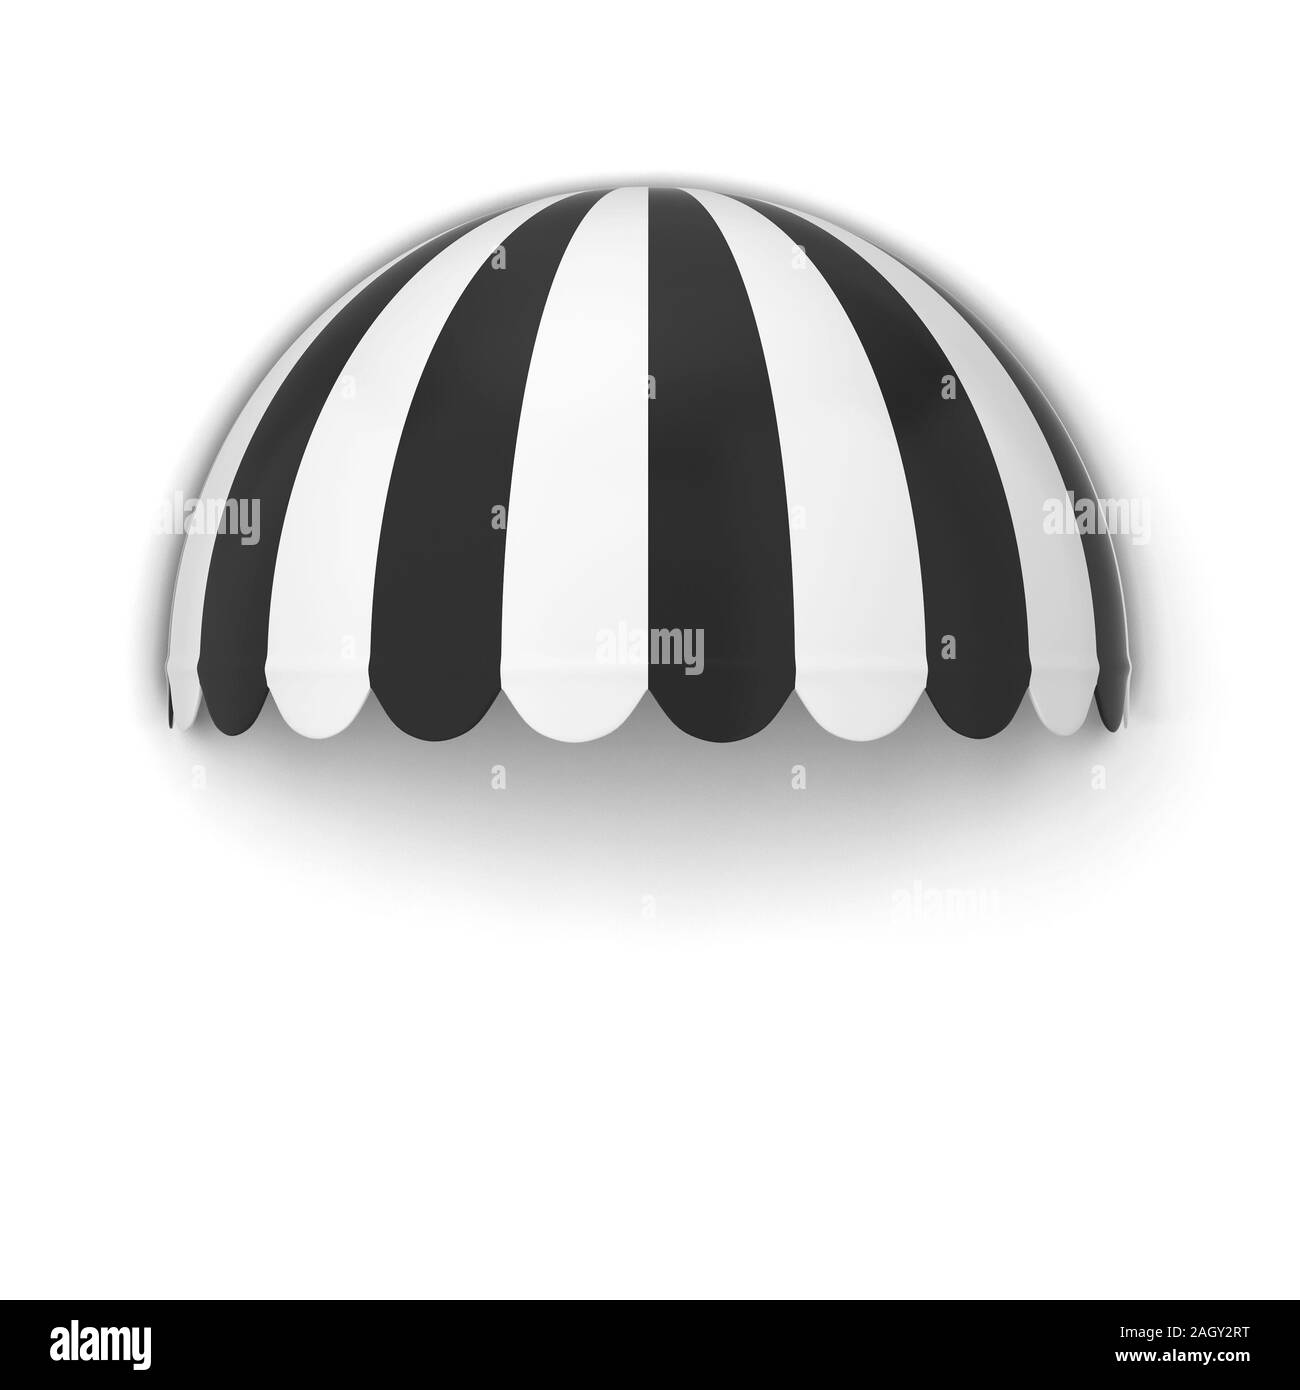 Negozio sferica tenda. 3d illustrazione isolati su sfondo bianco Foto Stock